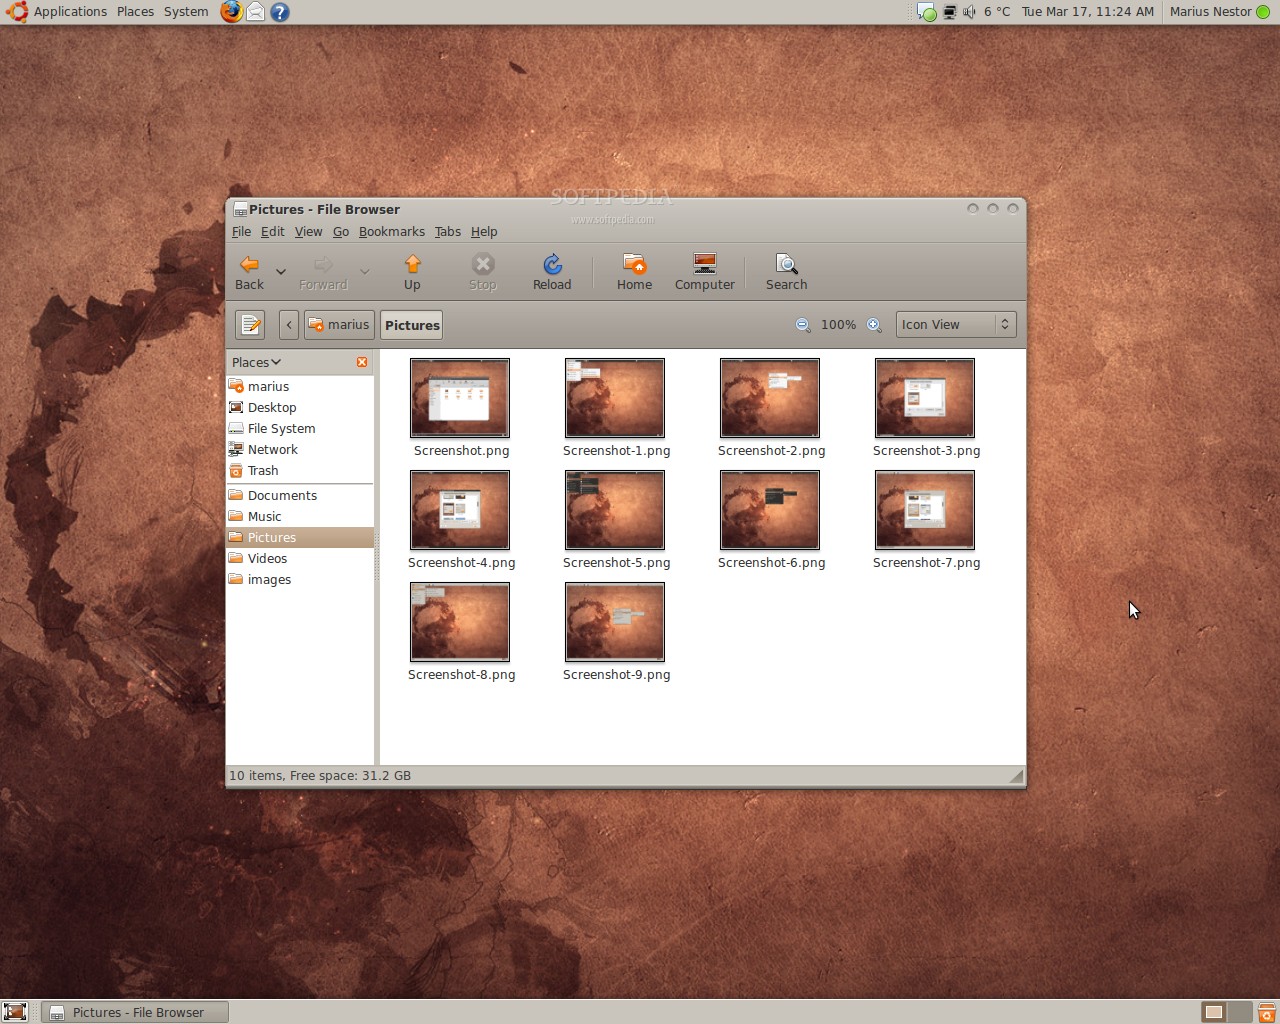 ubuntu 9.04 jaunty jackalope